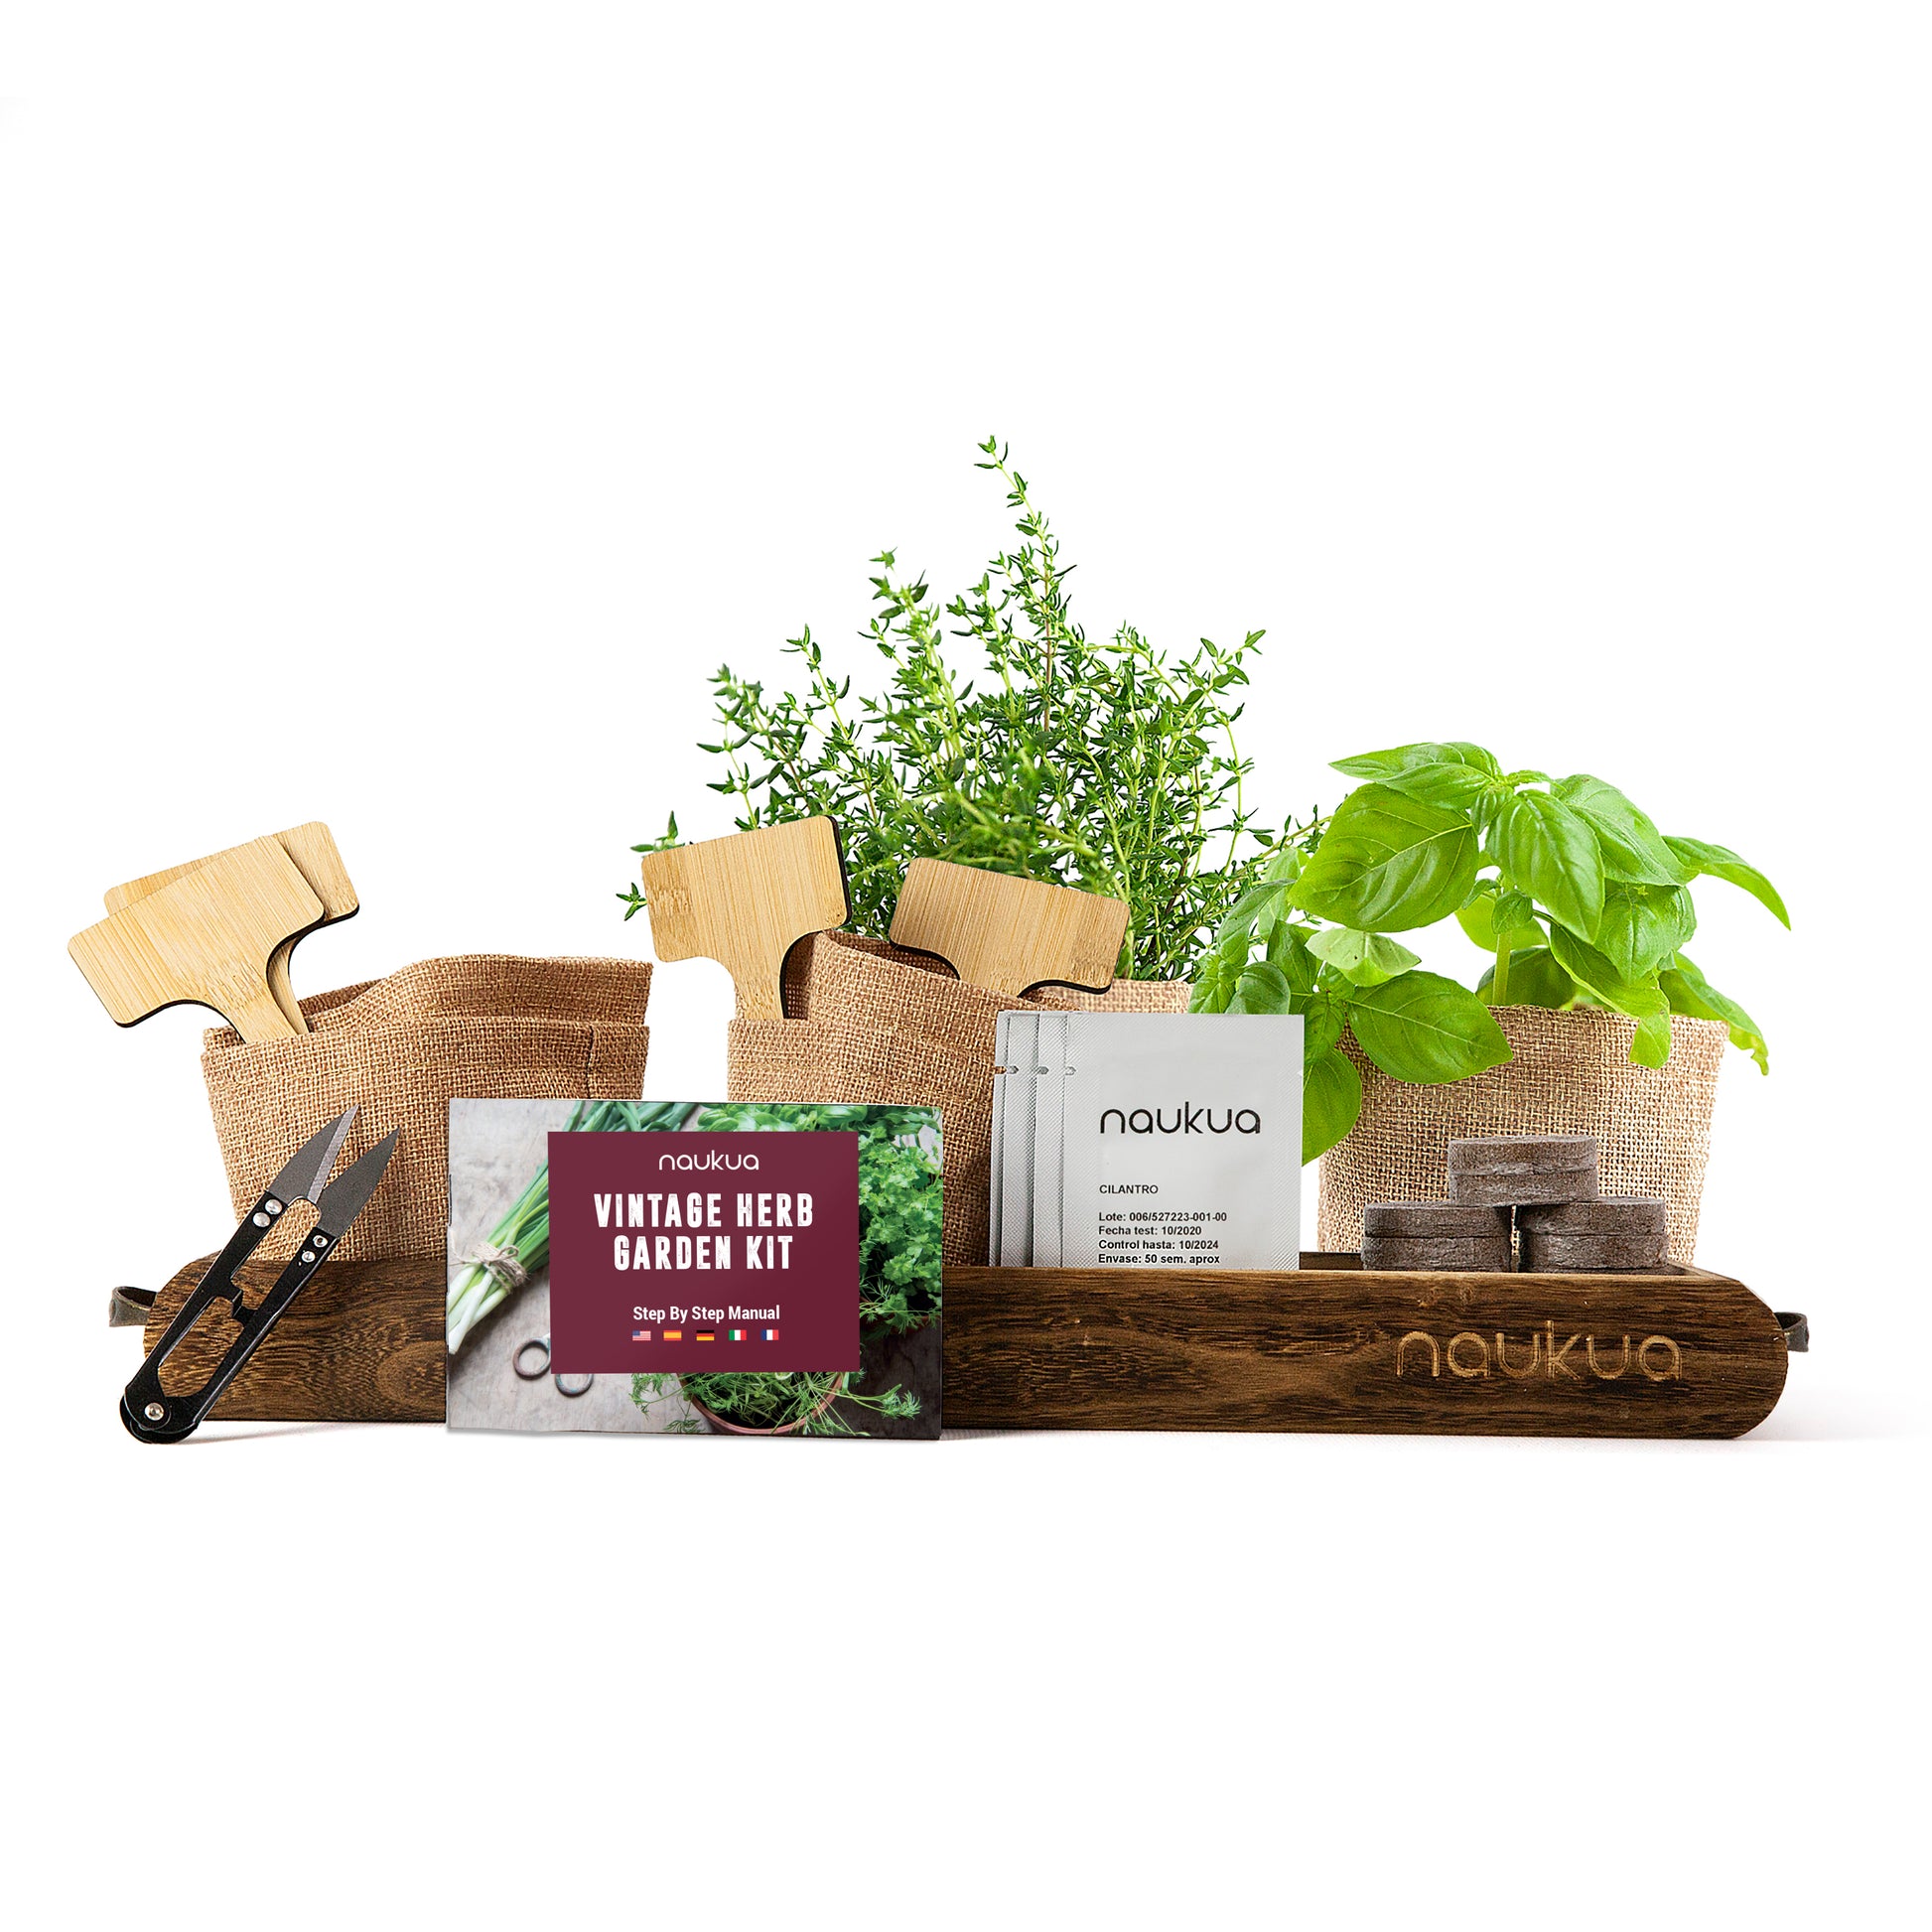 Plants d'aromatiques - Vente fines herbes en kit prêt à planter